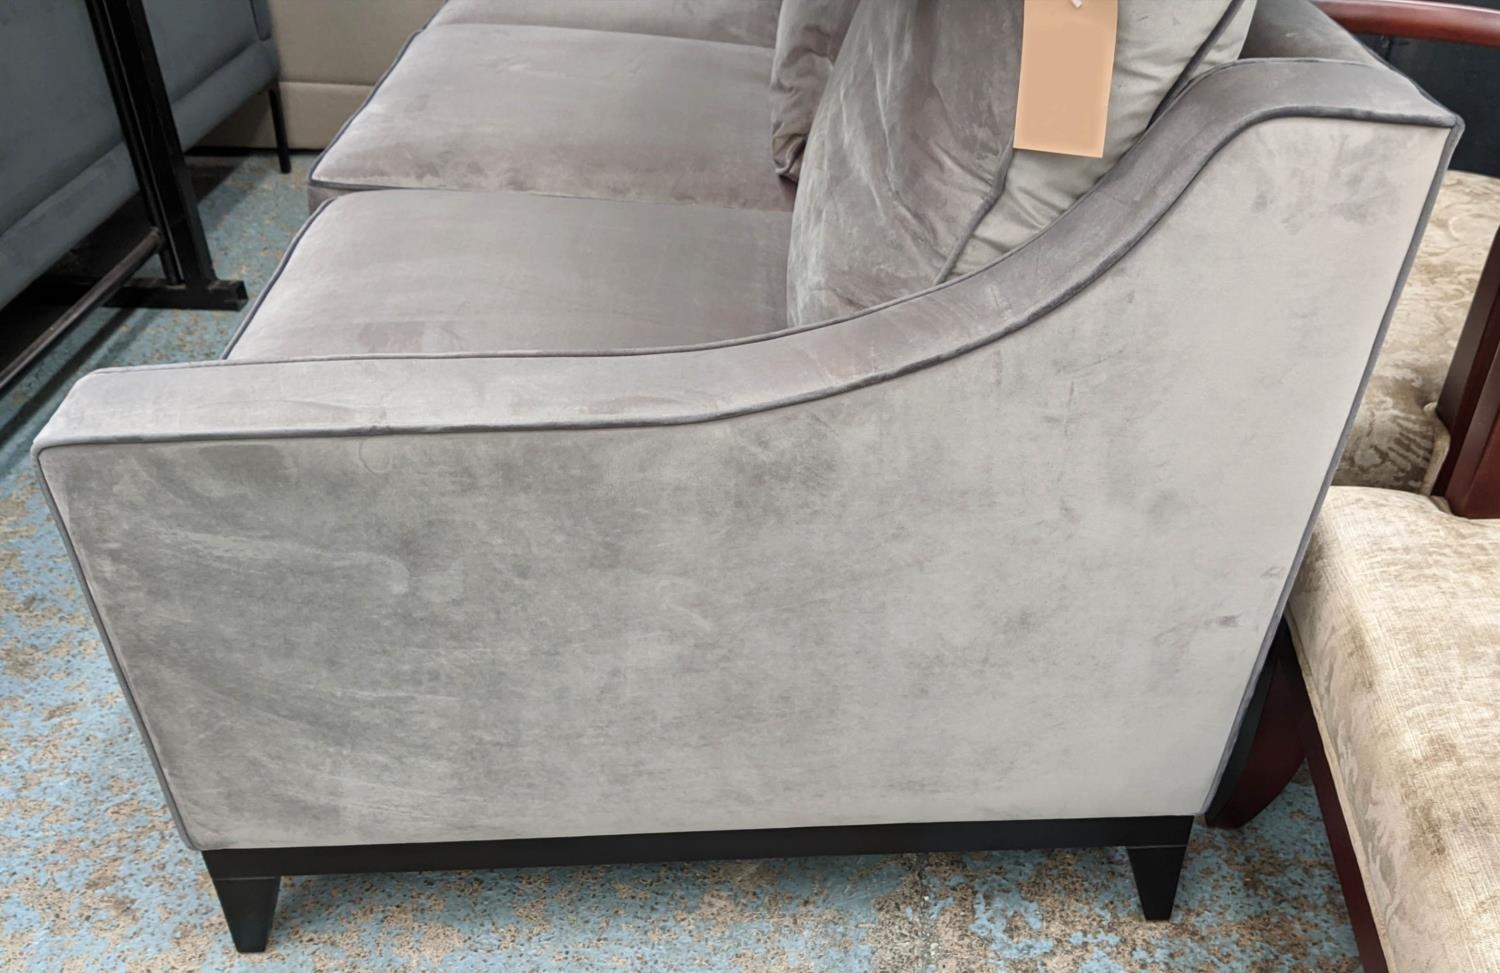 BESPOKE SOFA LONDON SOFA, 200cm x 95cm x 90cm, grey velvet upholstered. - Image 2 of 4